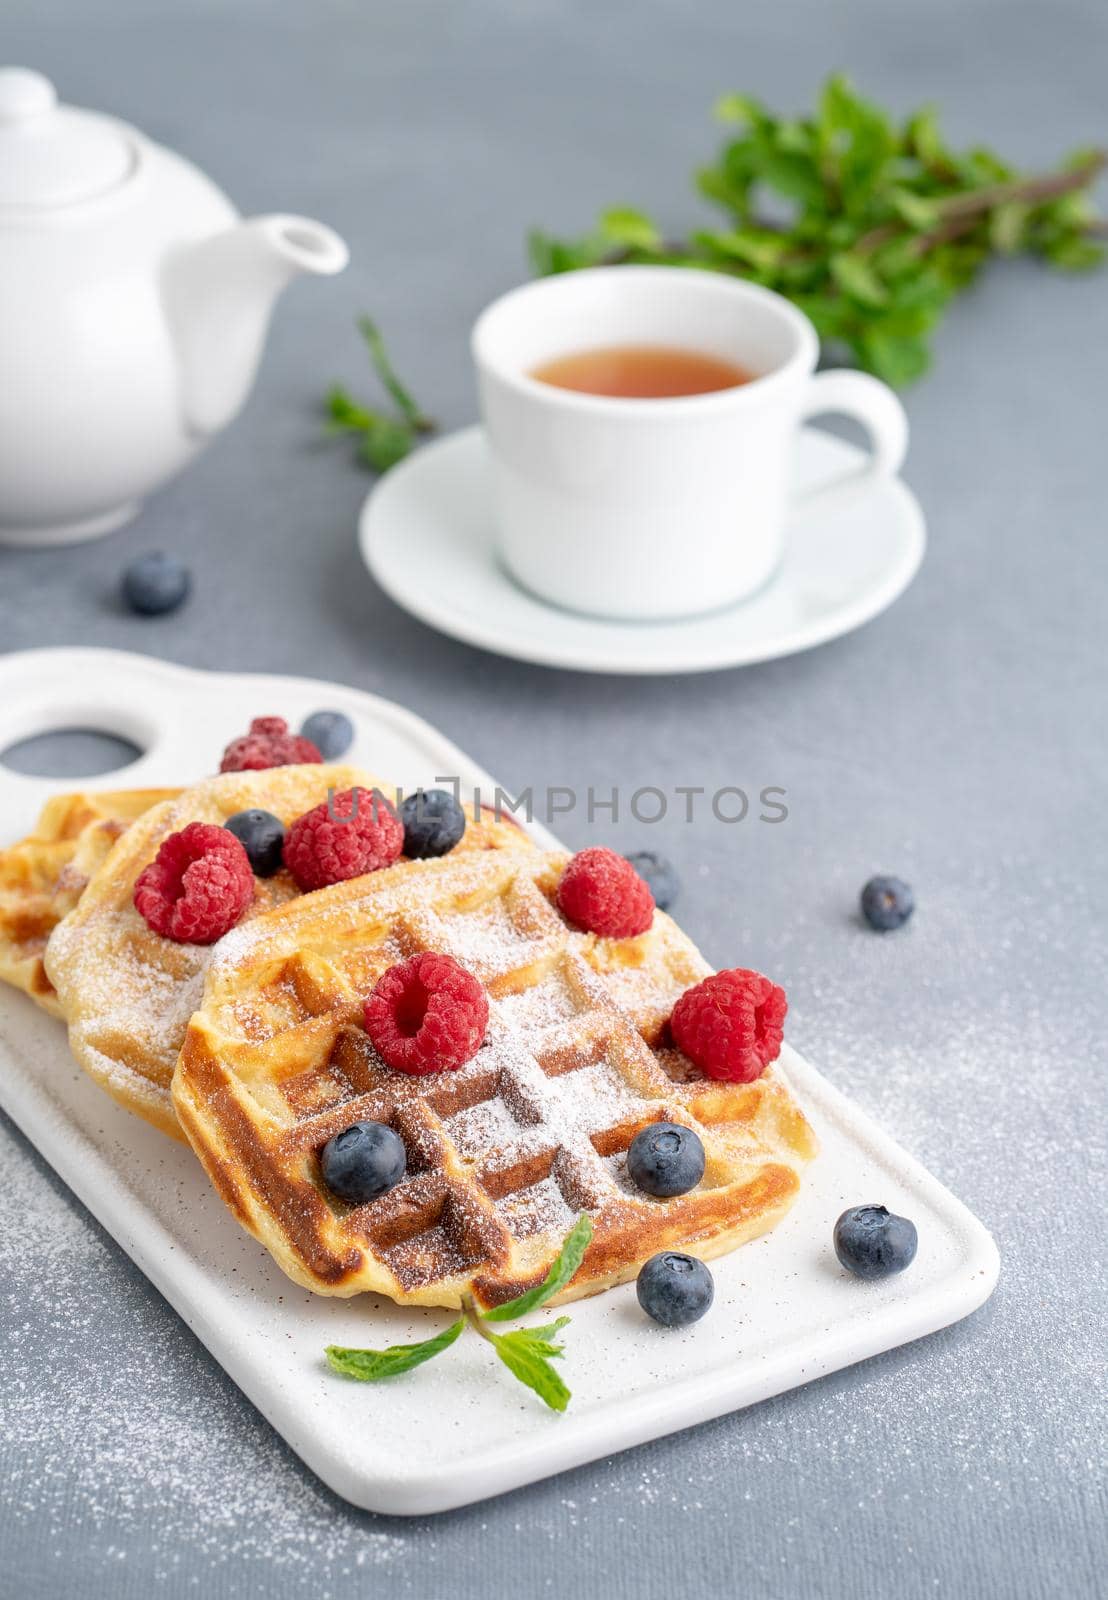 Belgian waffles with raspberries, blueberries, tea, vertical. Healthy homemade breakfast by NataBene